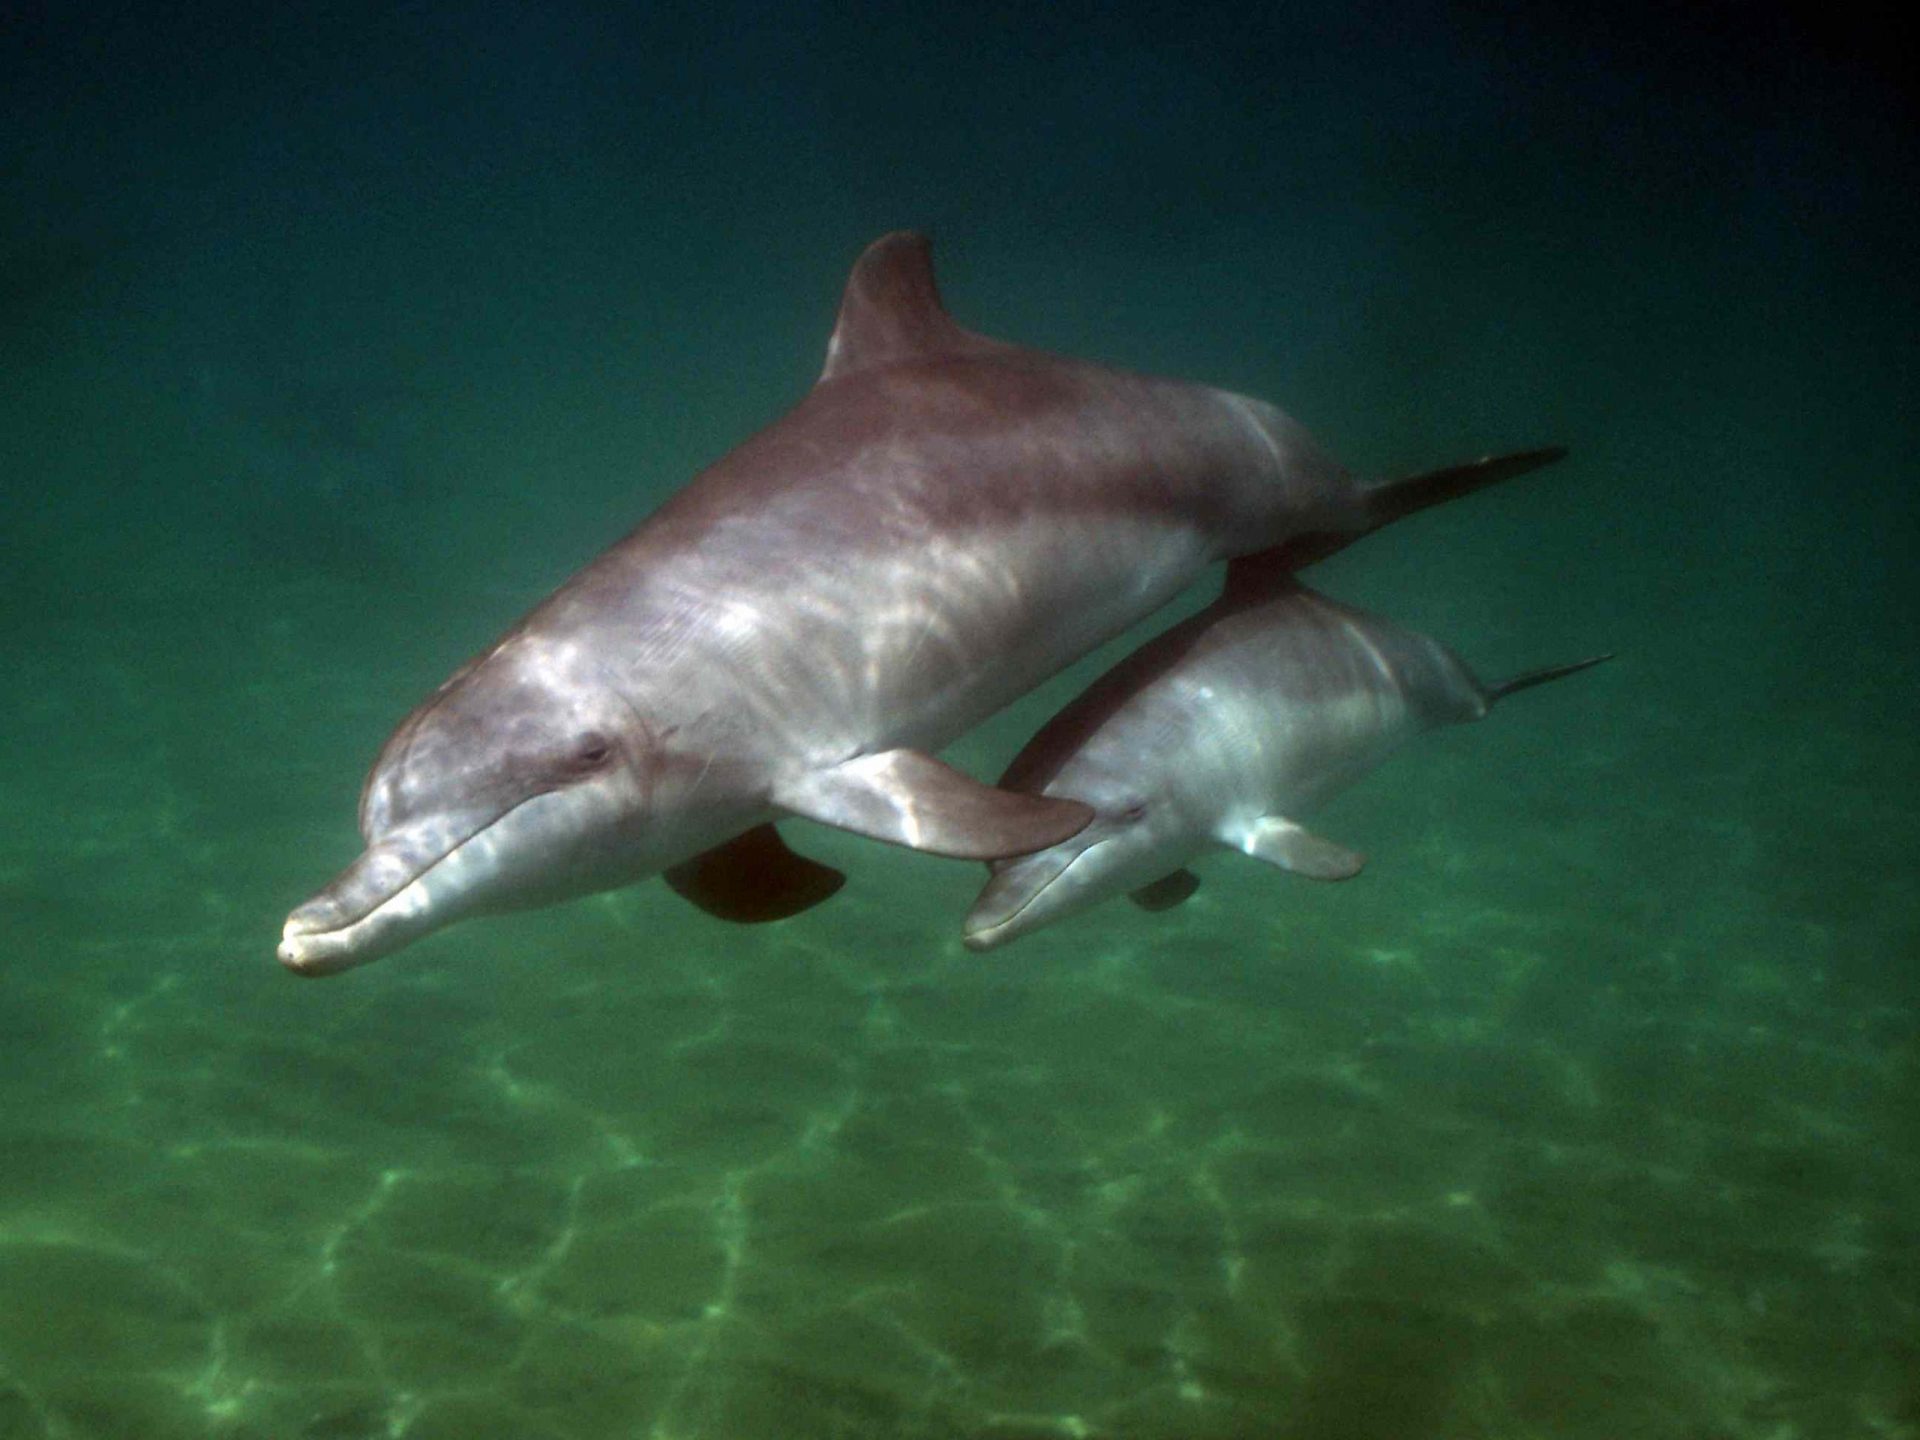 madre y cría de delfín nadando a la par en aguas oscuras